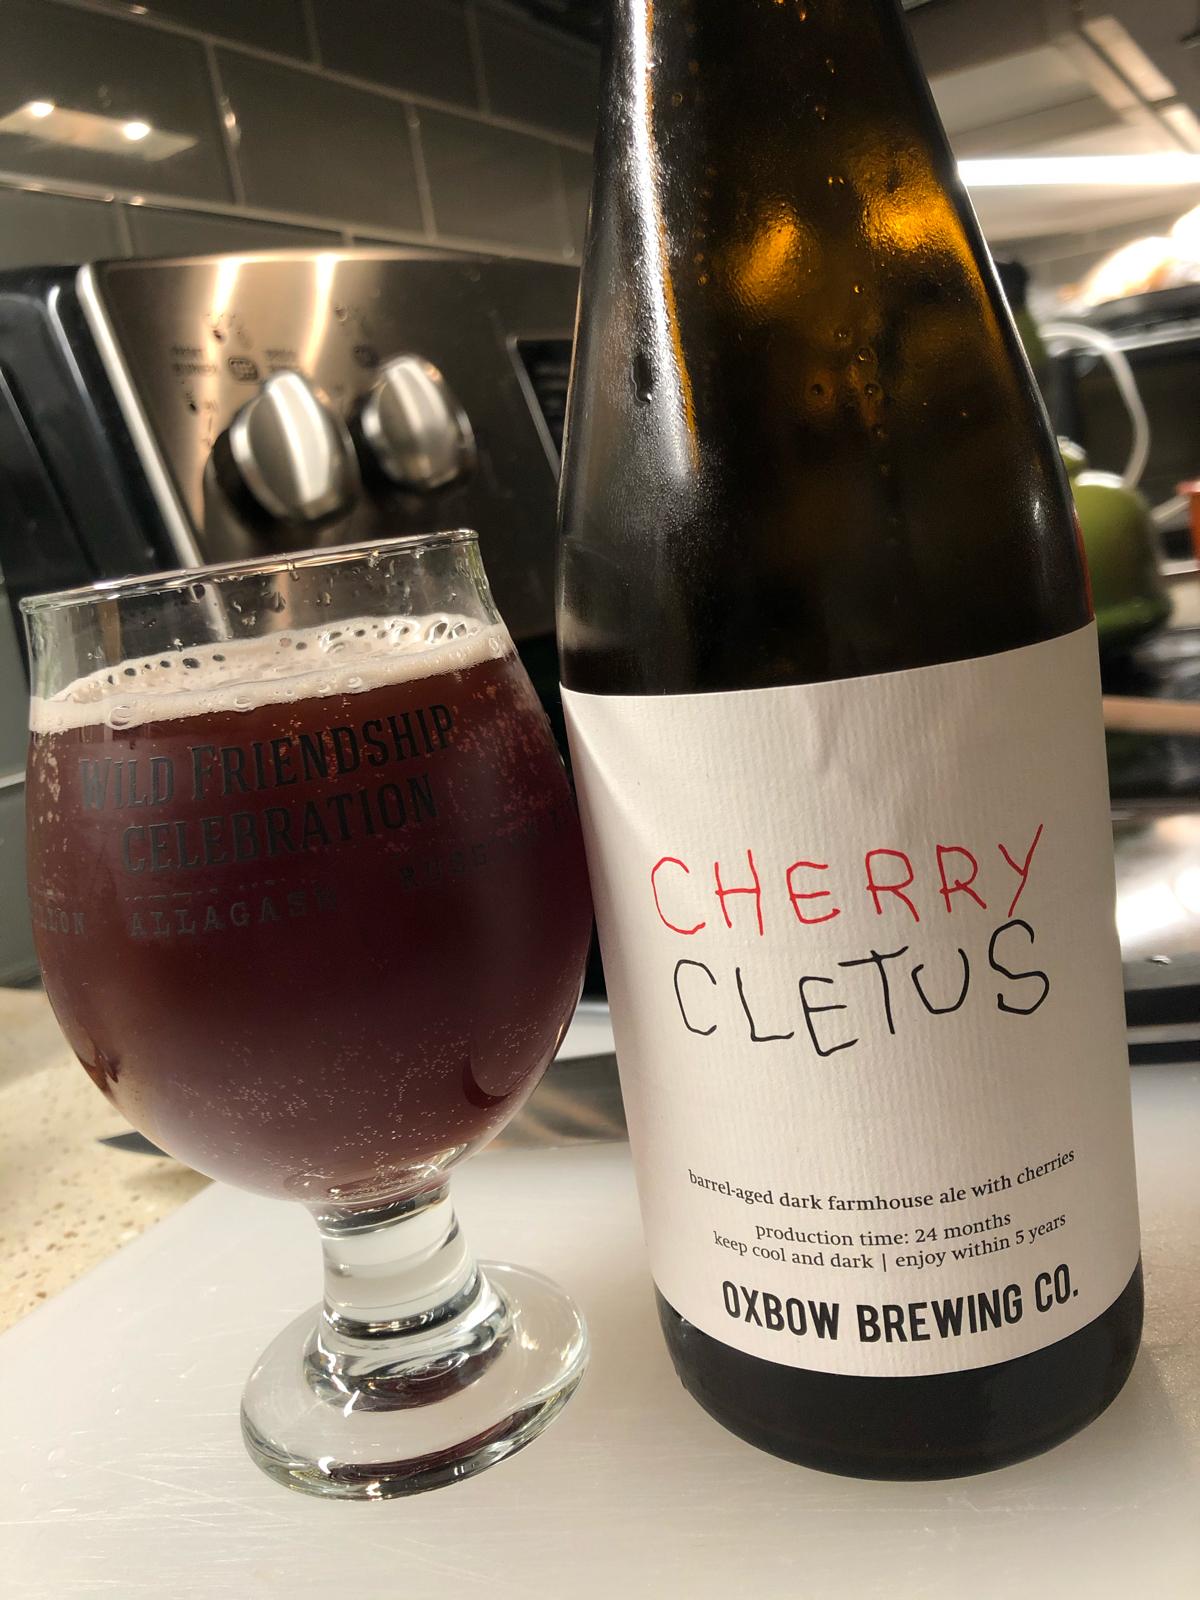 Cherry Cletus